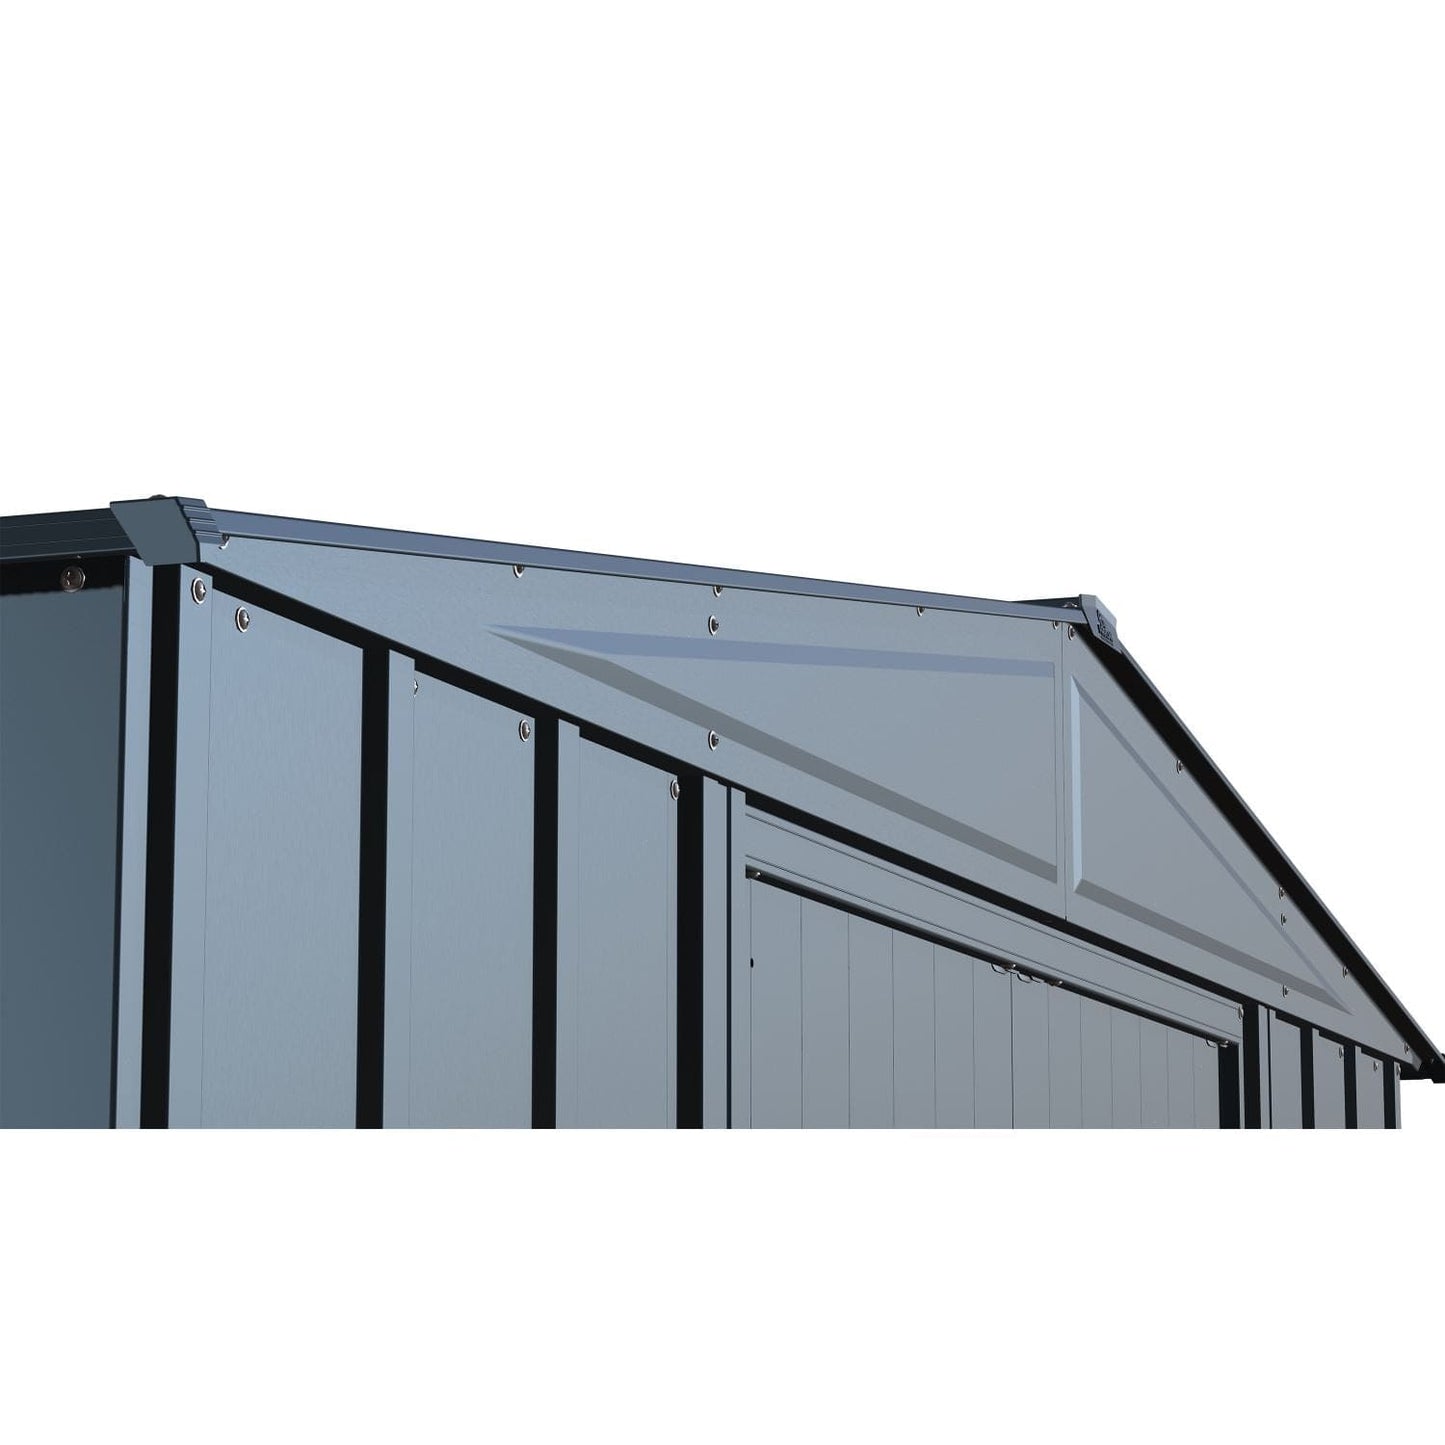 Arrow Metal Storage Shed Kit Arrow | Classic Steel Storage Shed, 8x8 ft., Blue Grey CLG88BG